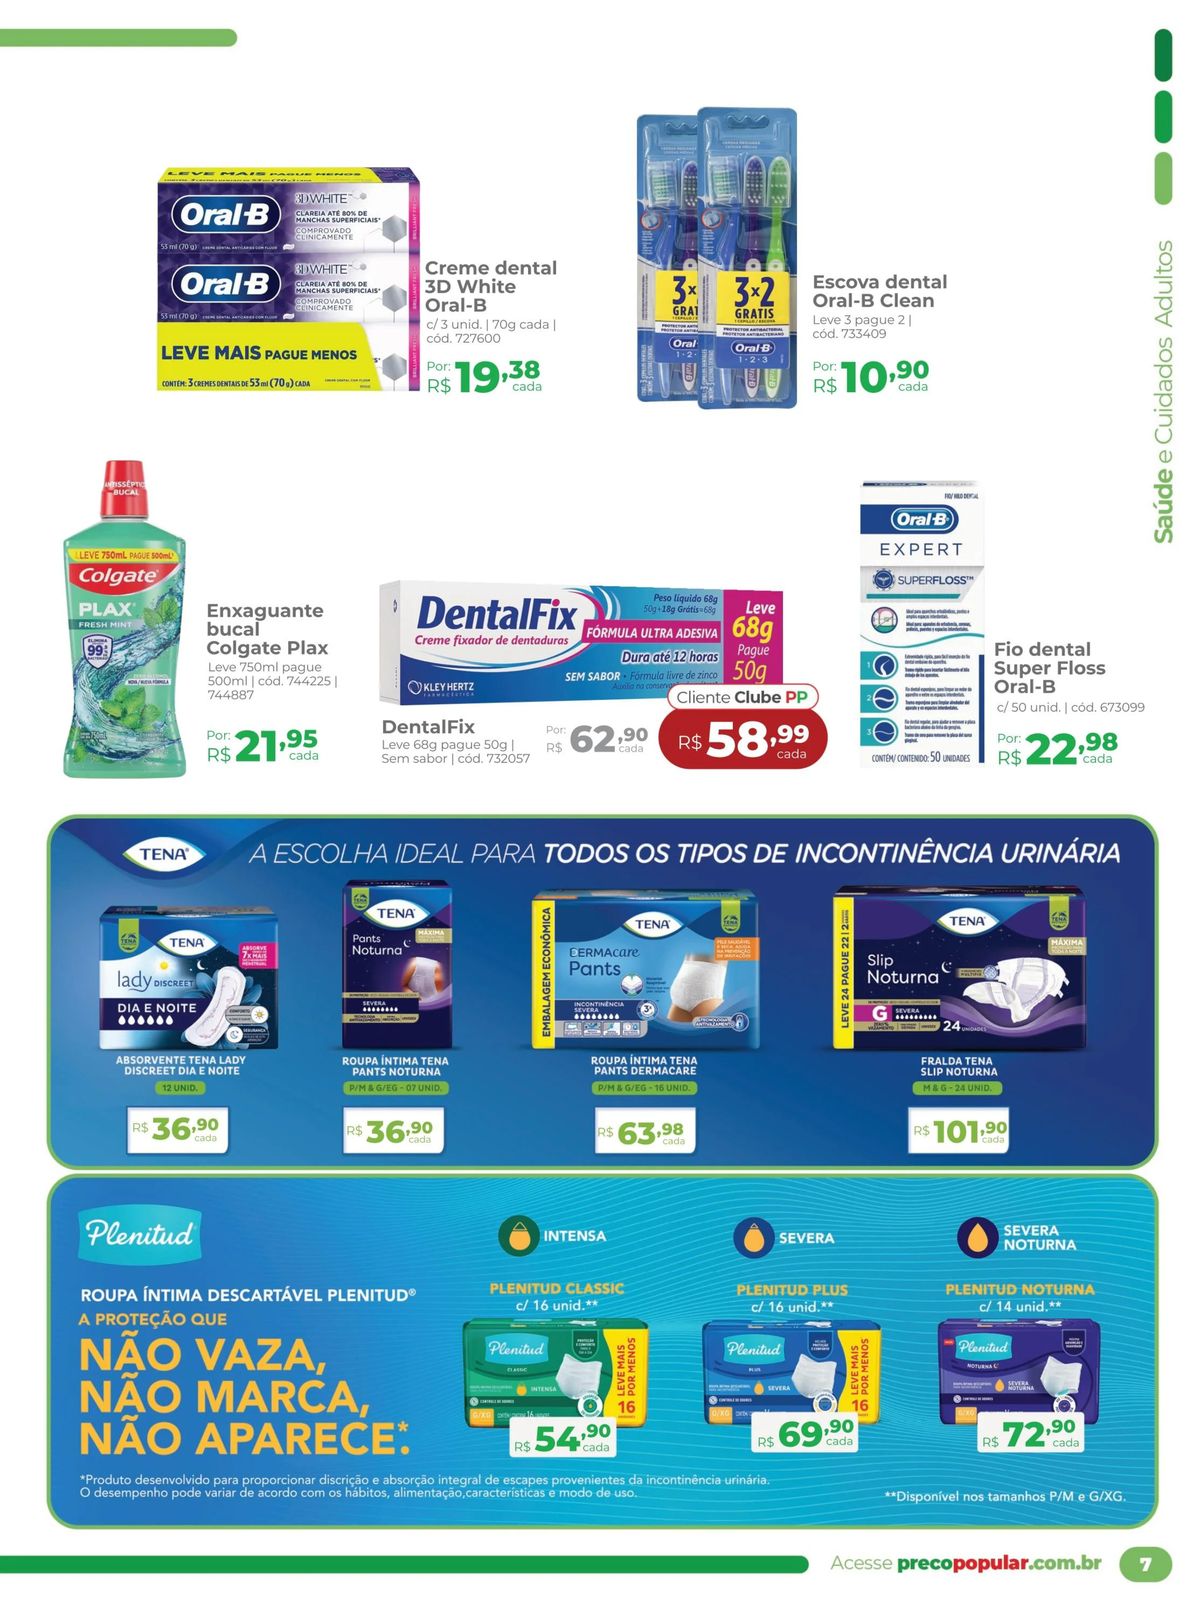 Produtos de higiene bucal em promoção na Farmácia Preço Popular